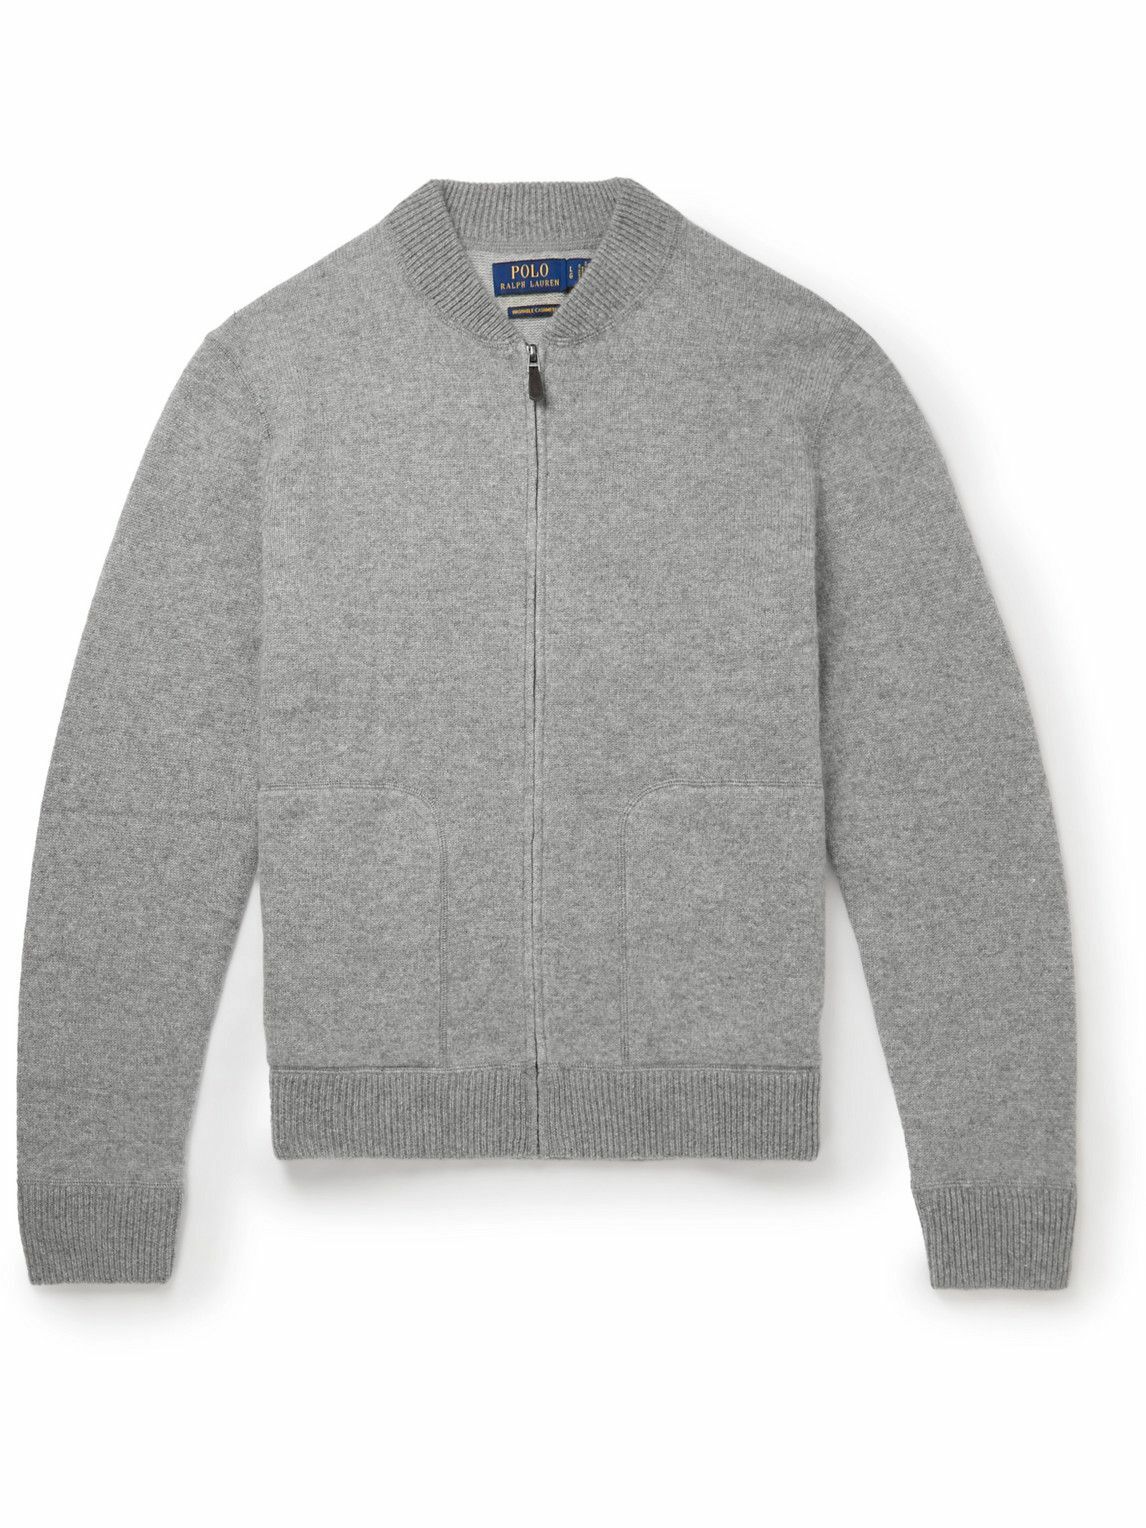 Photo: Polo Ralph Lauren - Cashmere Zip-Up Sweatshirt - Gray